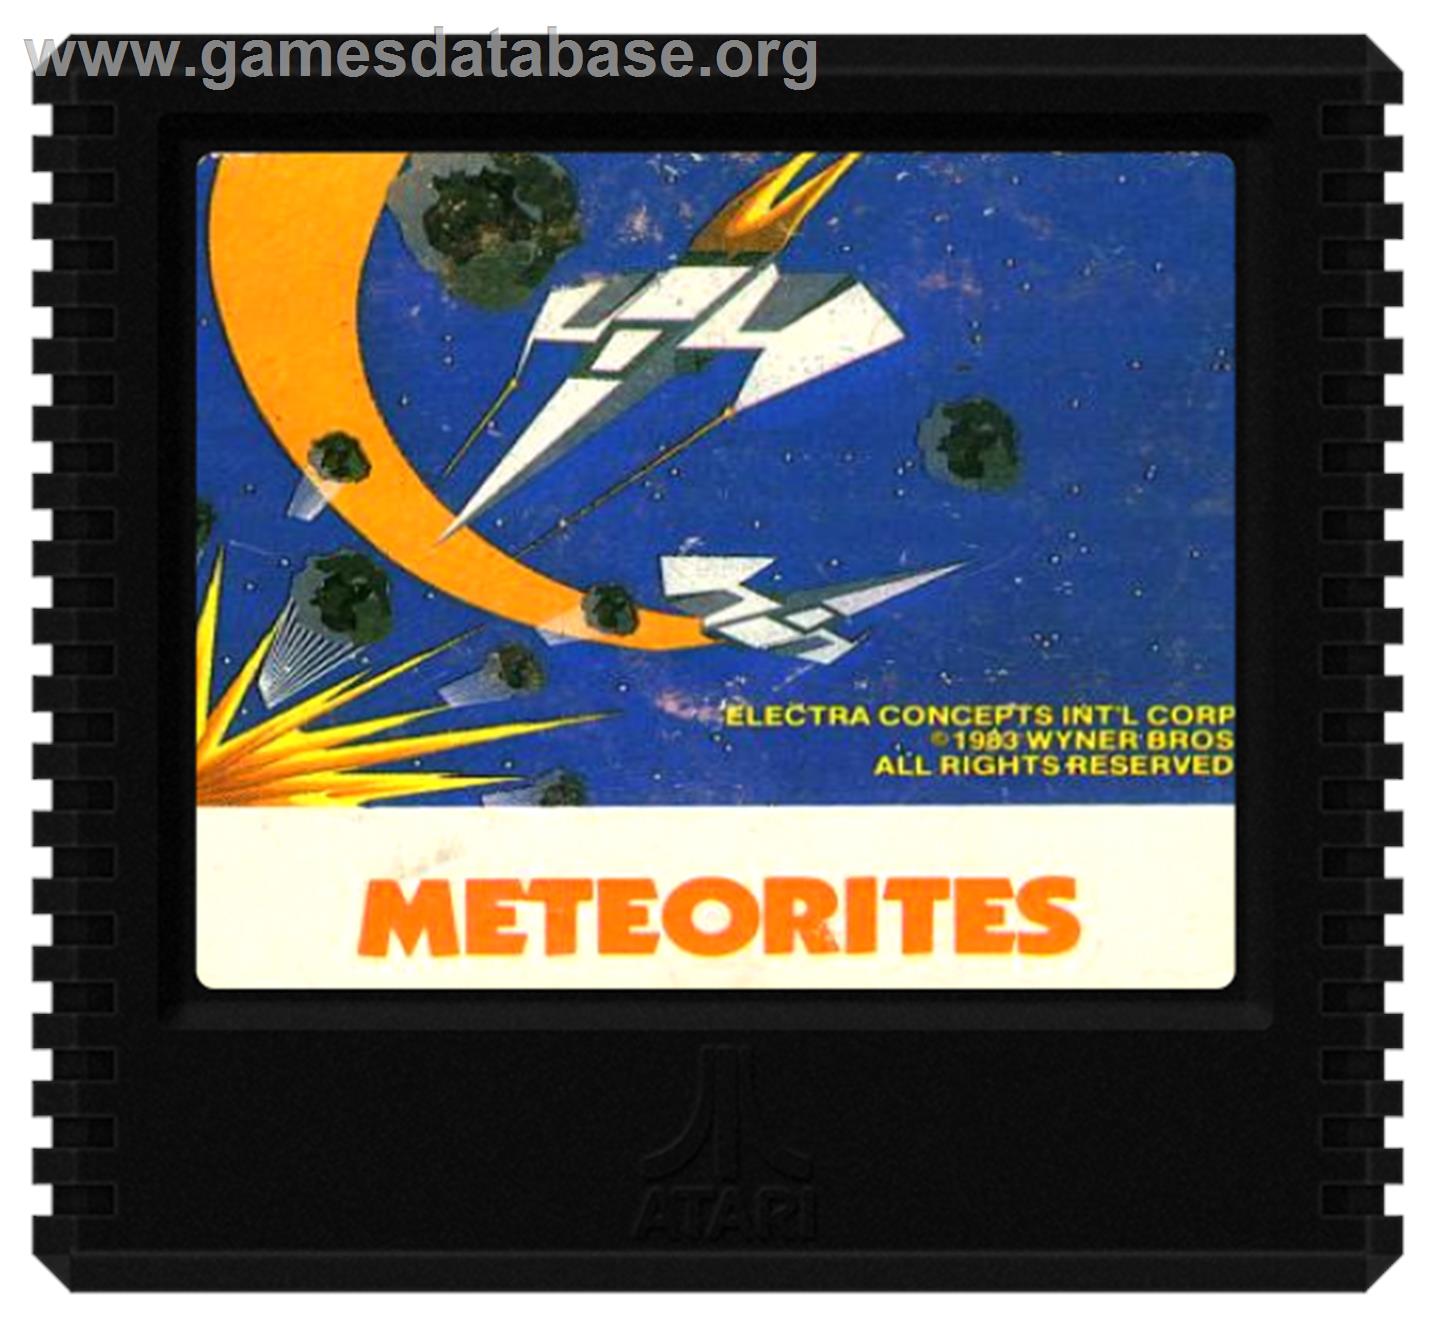 Meteorites - Atari 5200 - Artwork - Cartridge